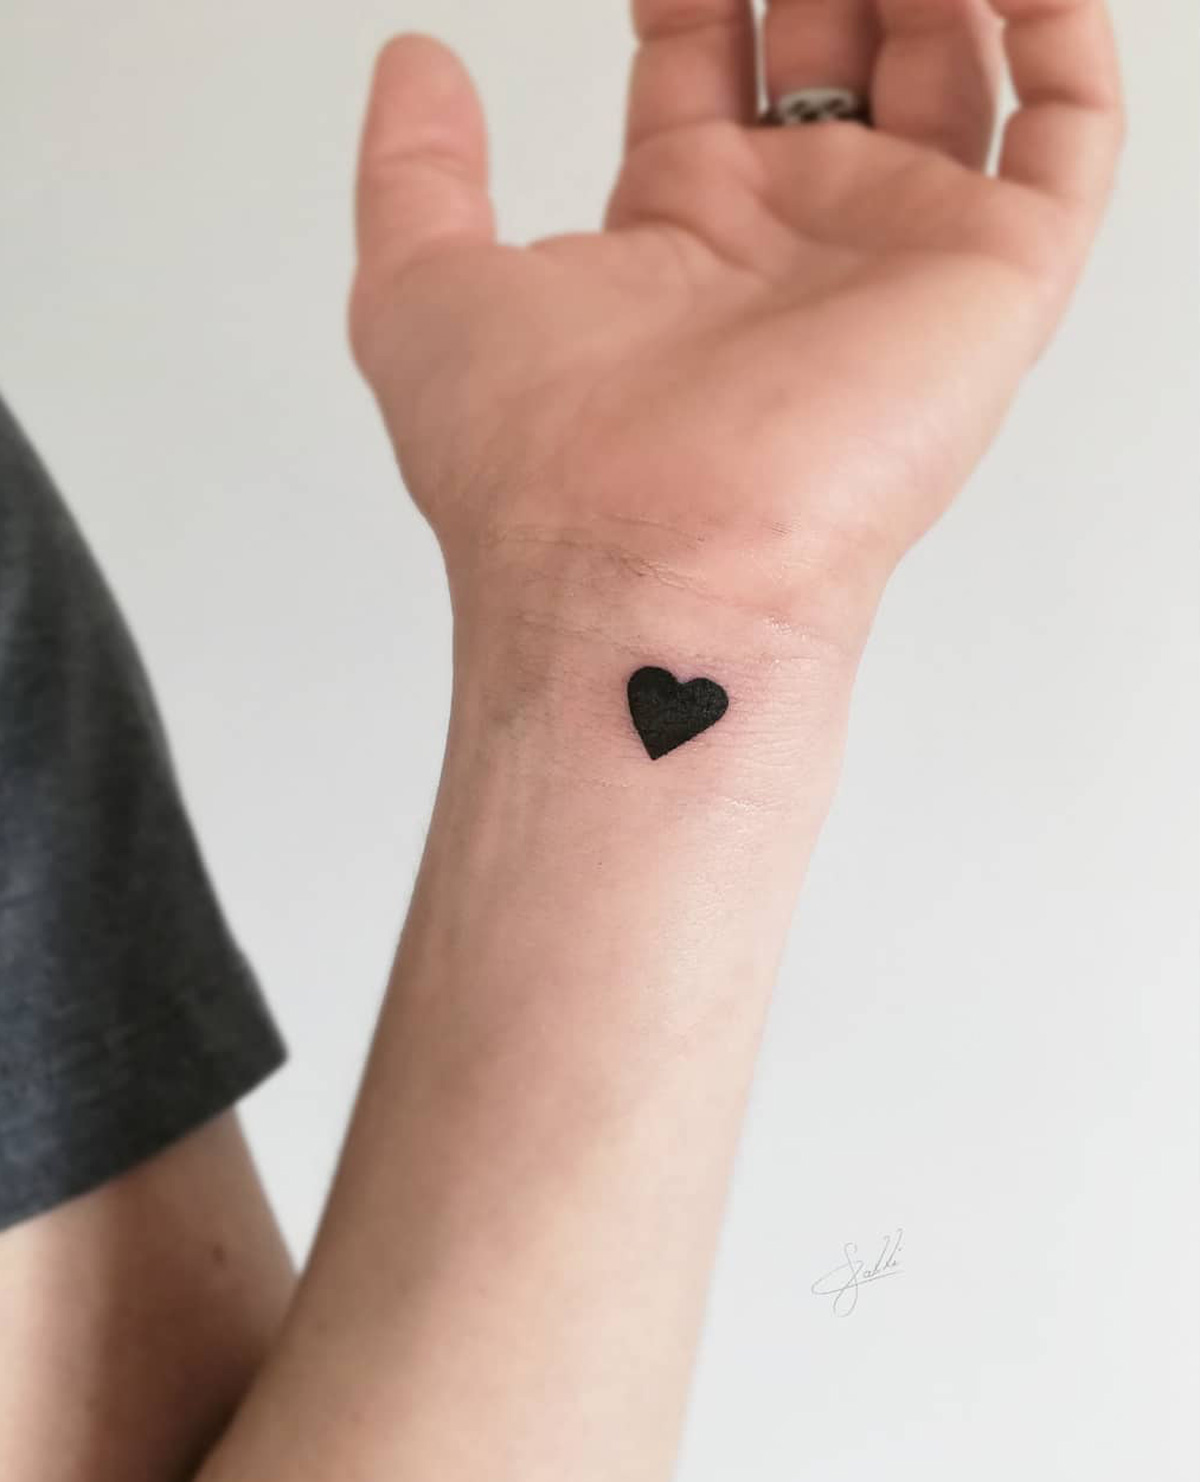 small wrist tattoos